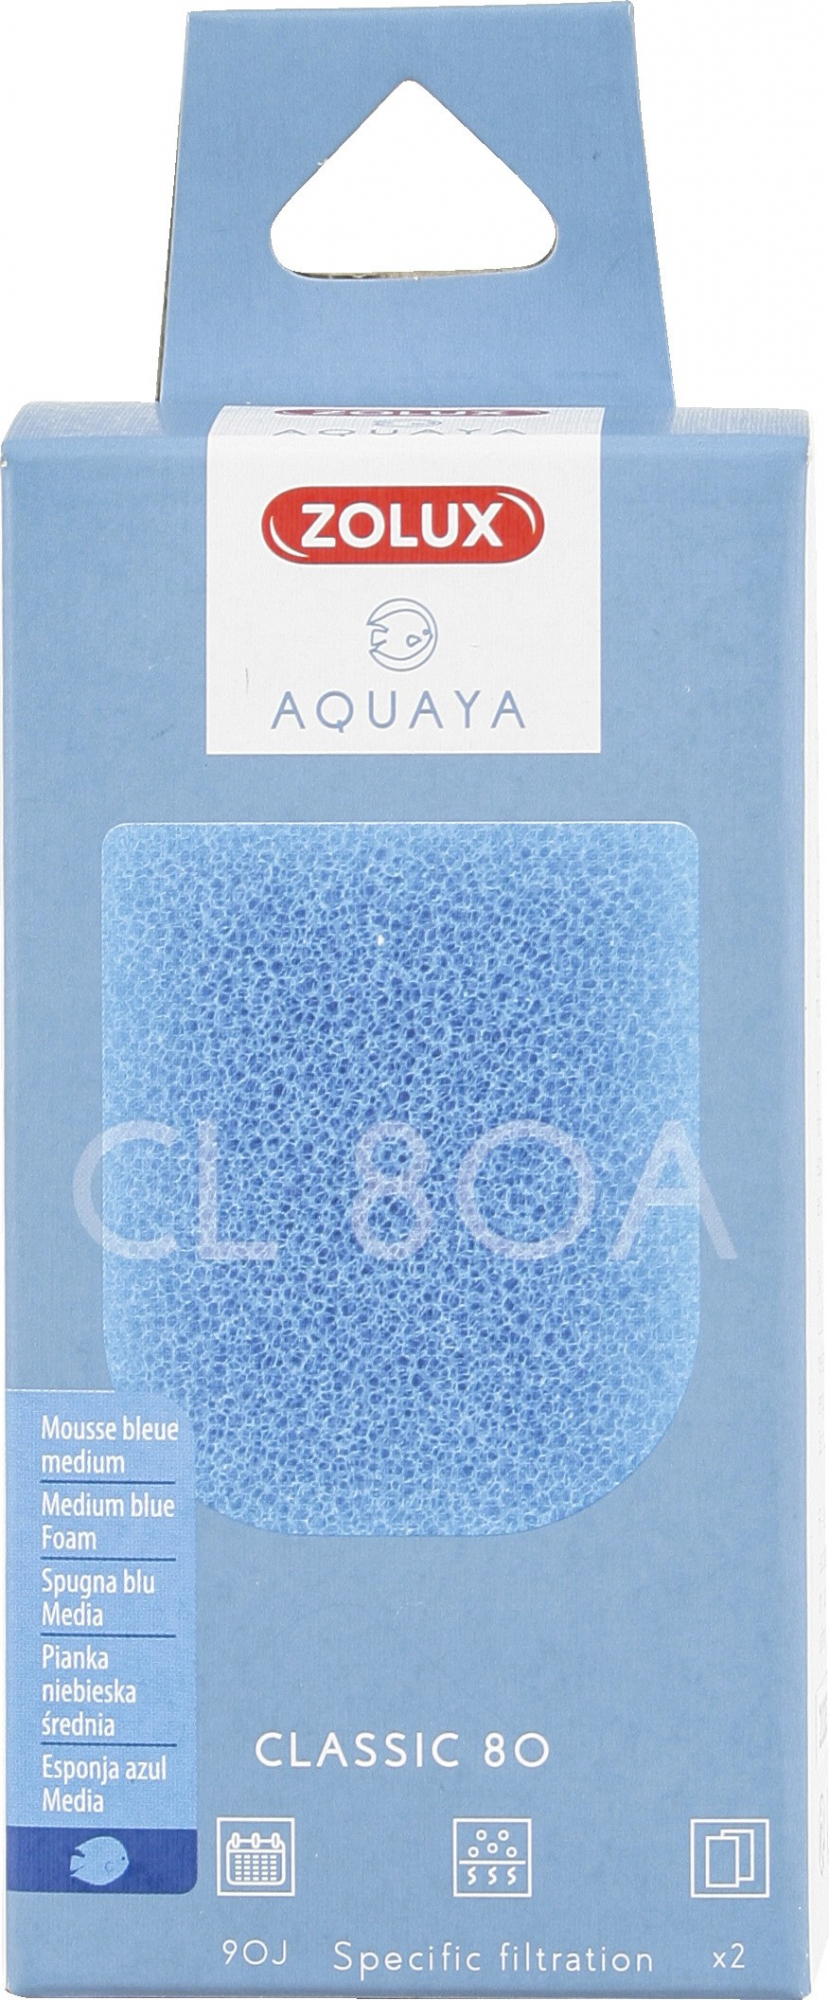 Espuma azul para filtro Aquaya Classic